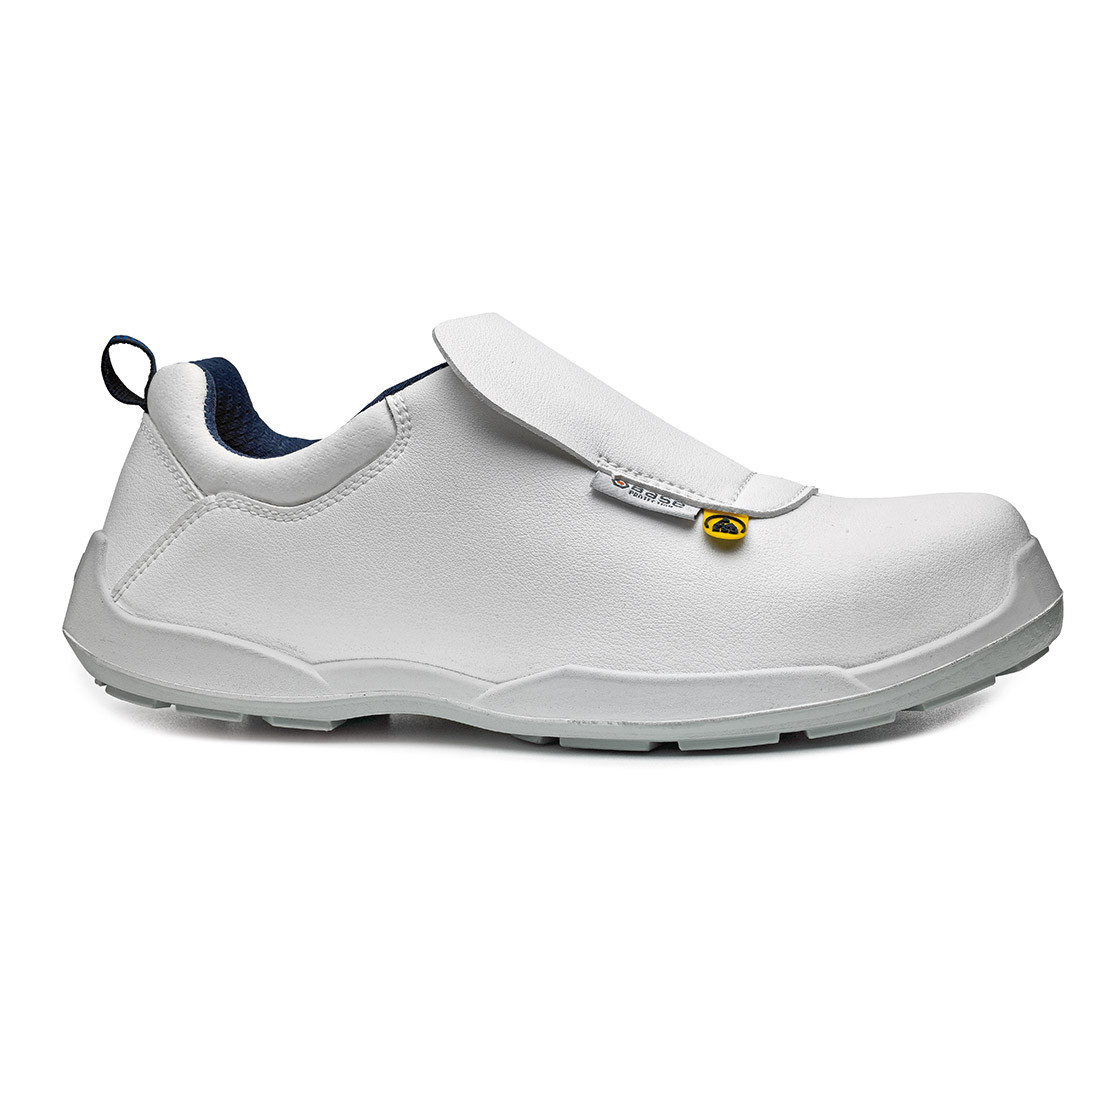 Bob Shoe S3 ESD SRC - Les chaussures de protection